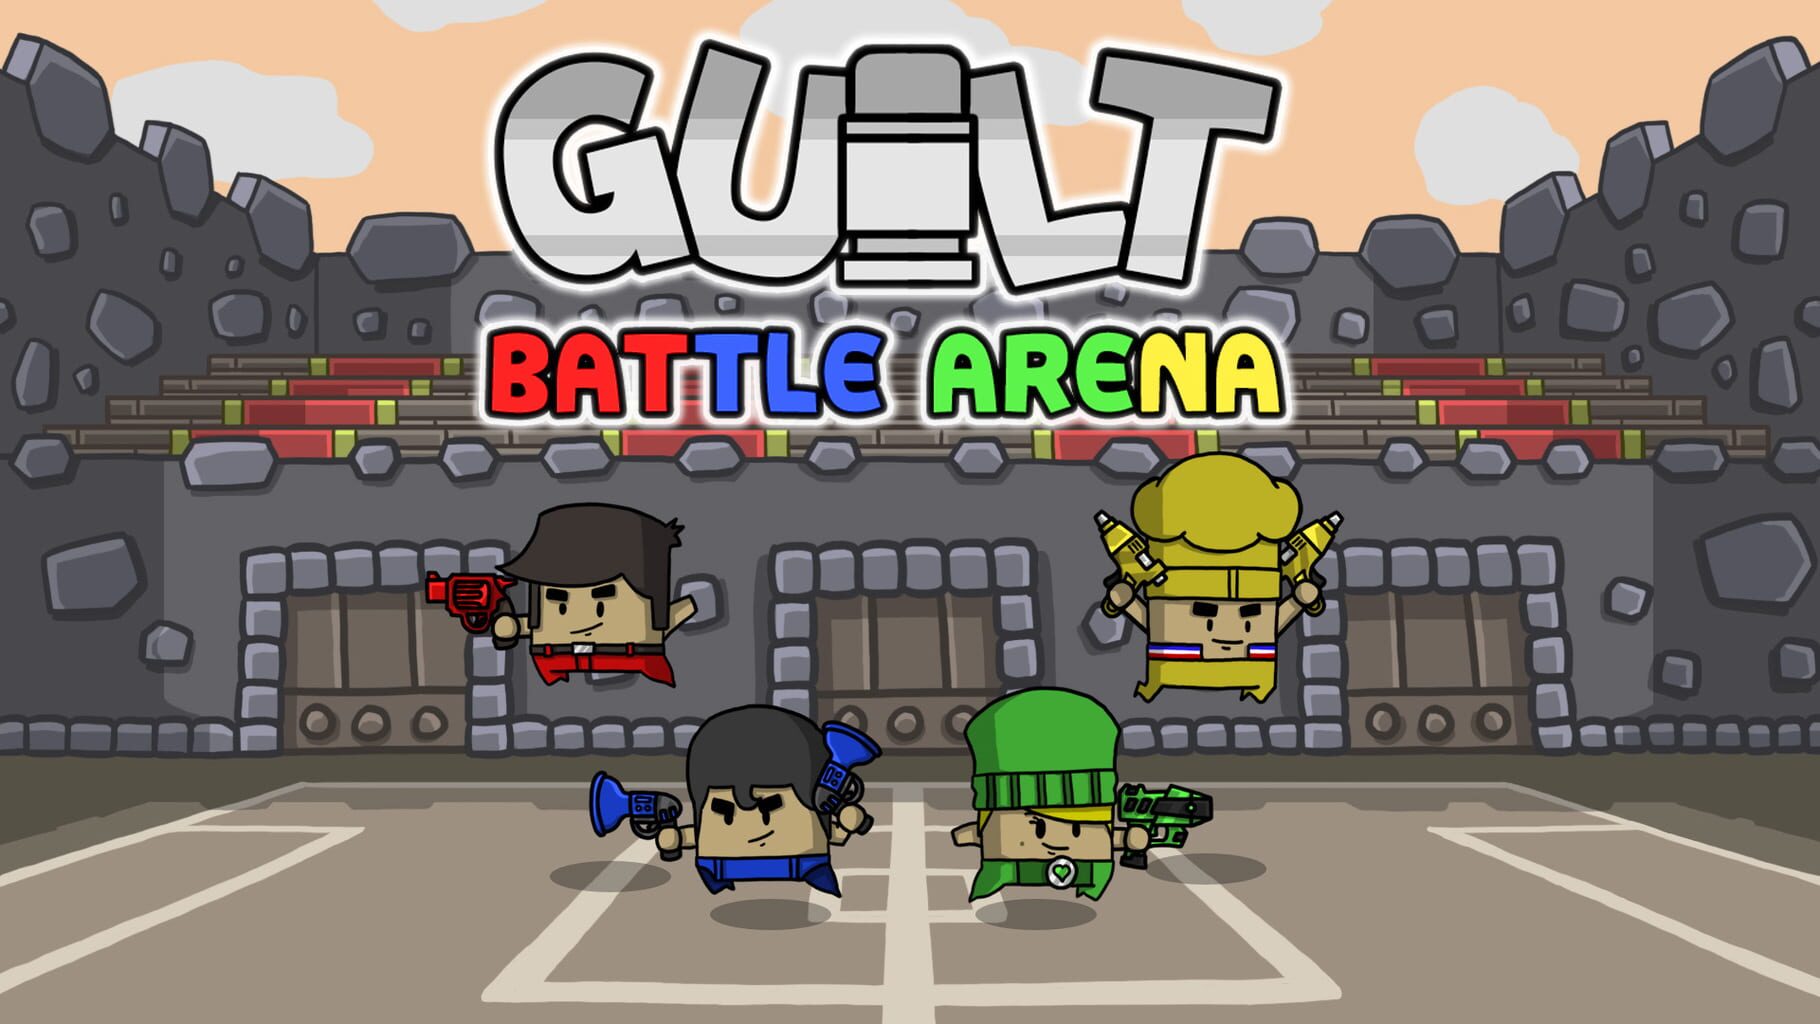 Guilt Battle Arena artwork